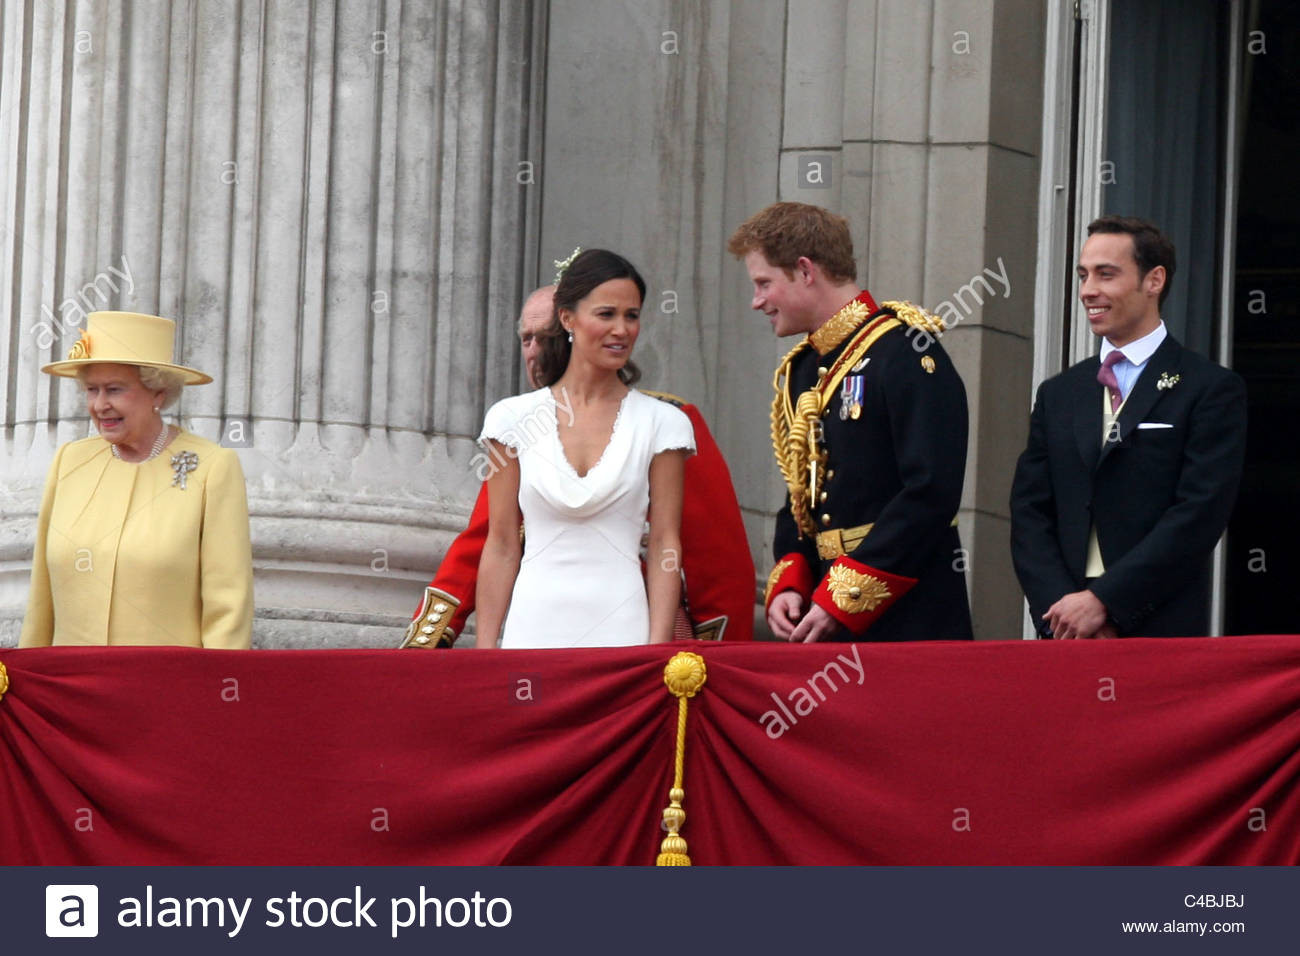 Königliche Hochzeit Harry
 PIPPA MIDDLETON UND PRINZ HARRY AT DIE KÖNIGLICHE HOCHZEIT